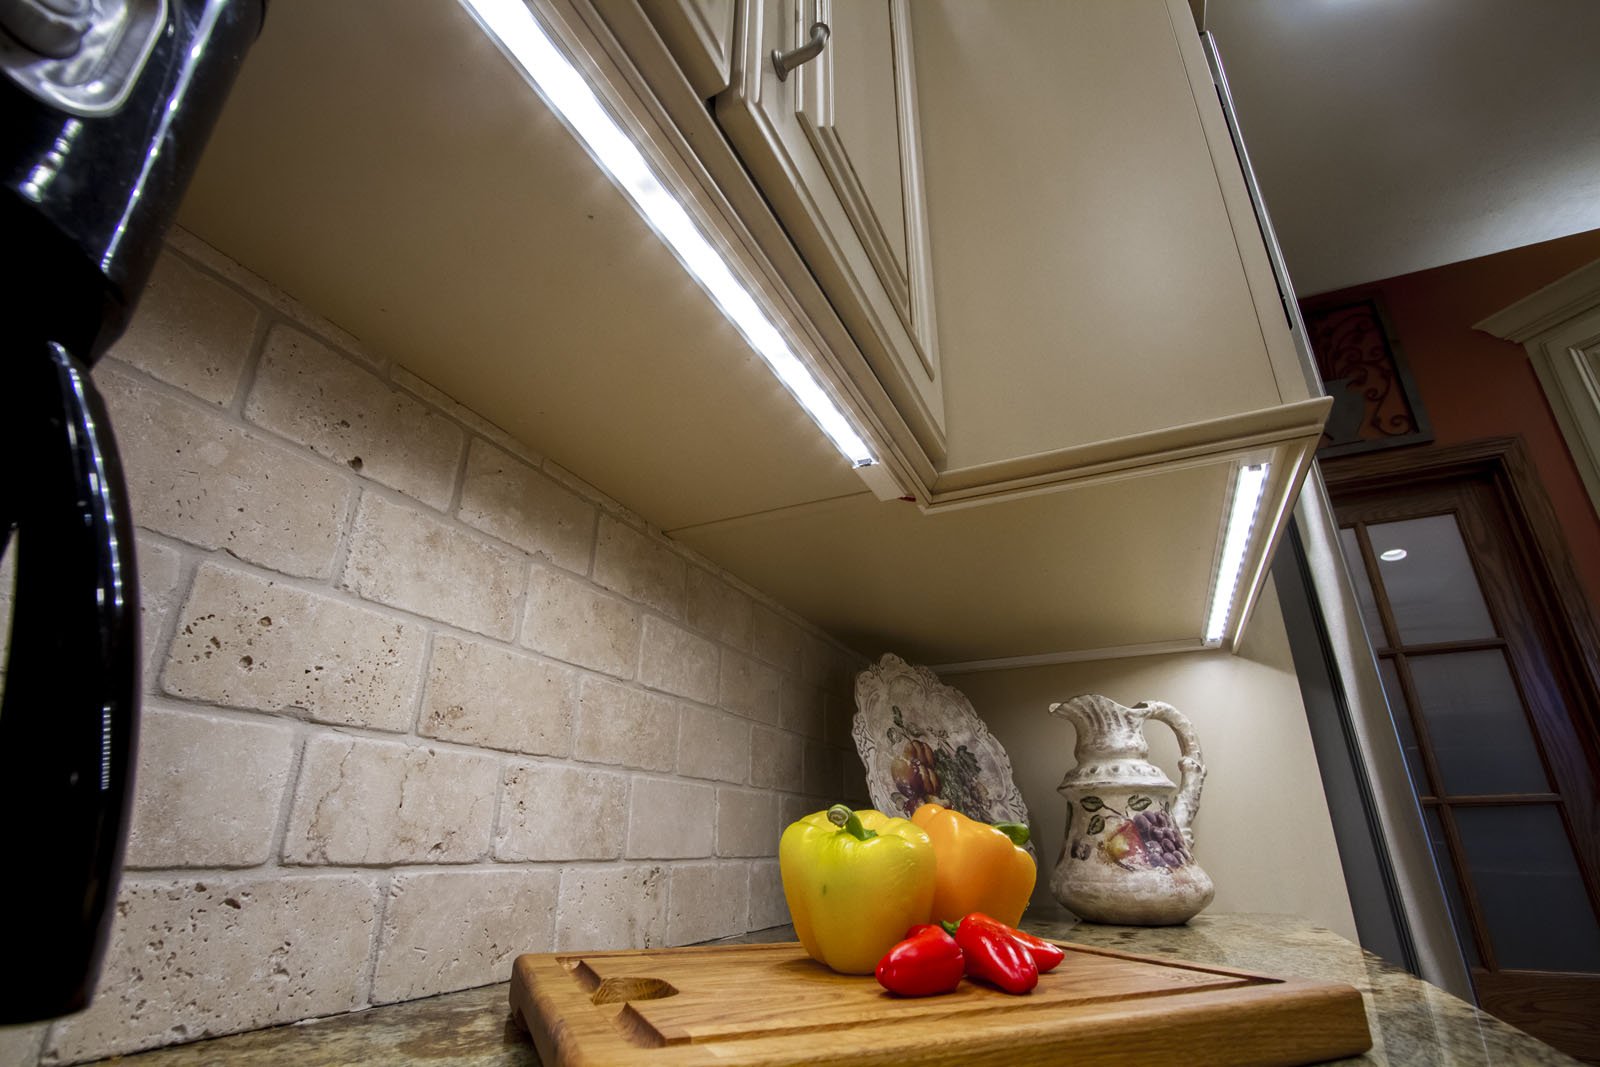 Лучшие подсветки для кухни. Подсветка для кухни. Подсветка под кухонными шкафами. Подсветка для кухни под шкафы. Подсветка столешницы.